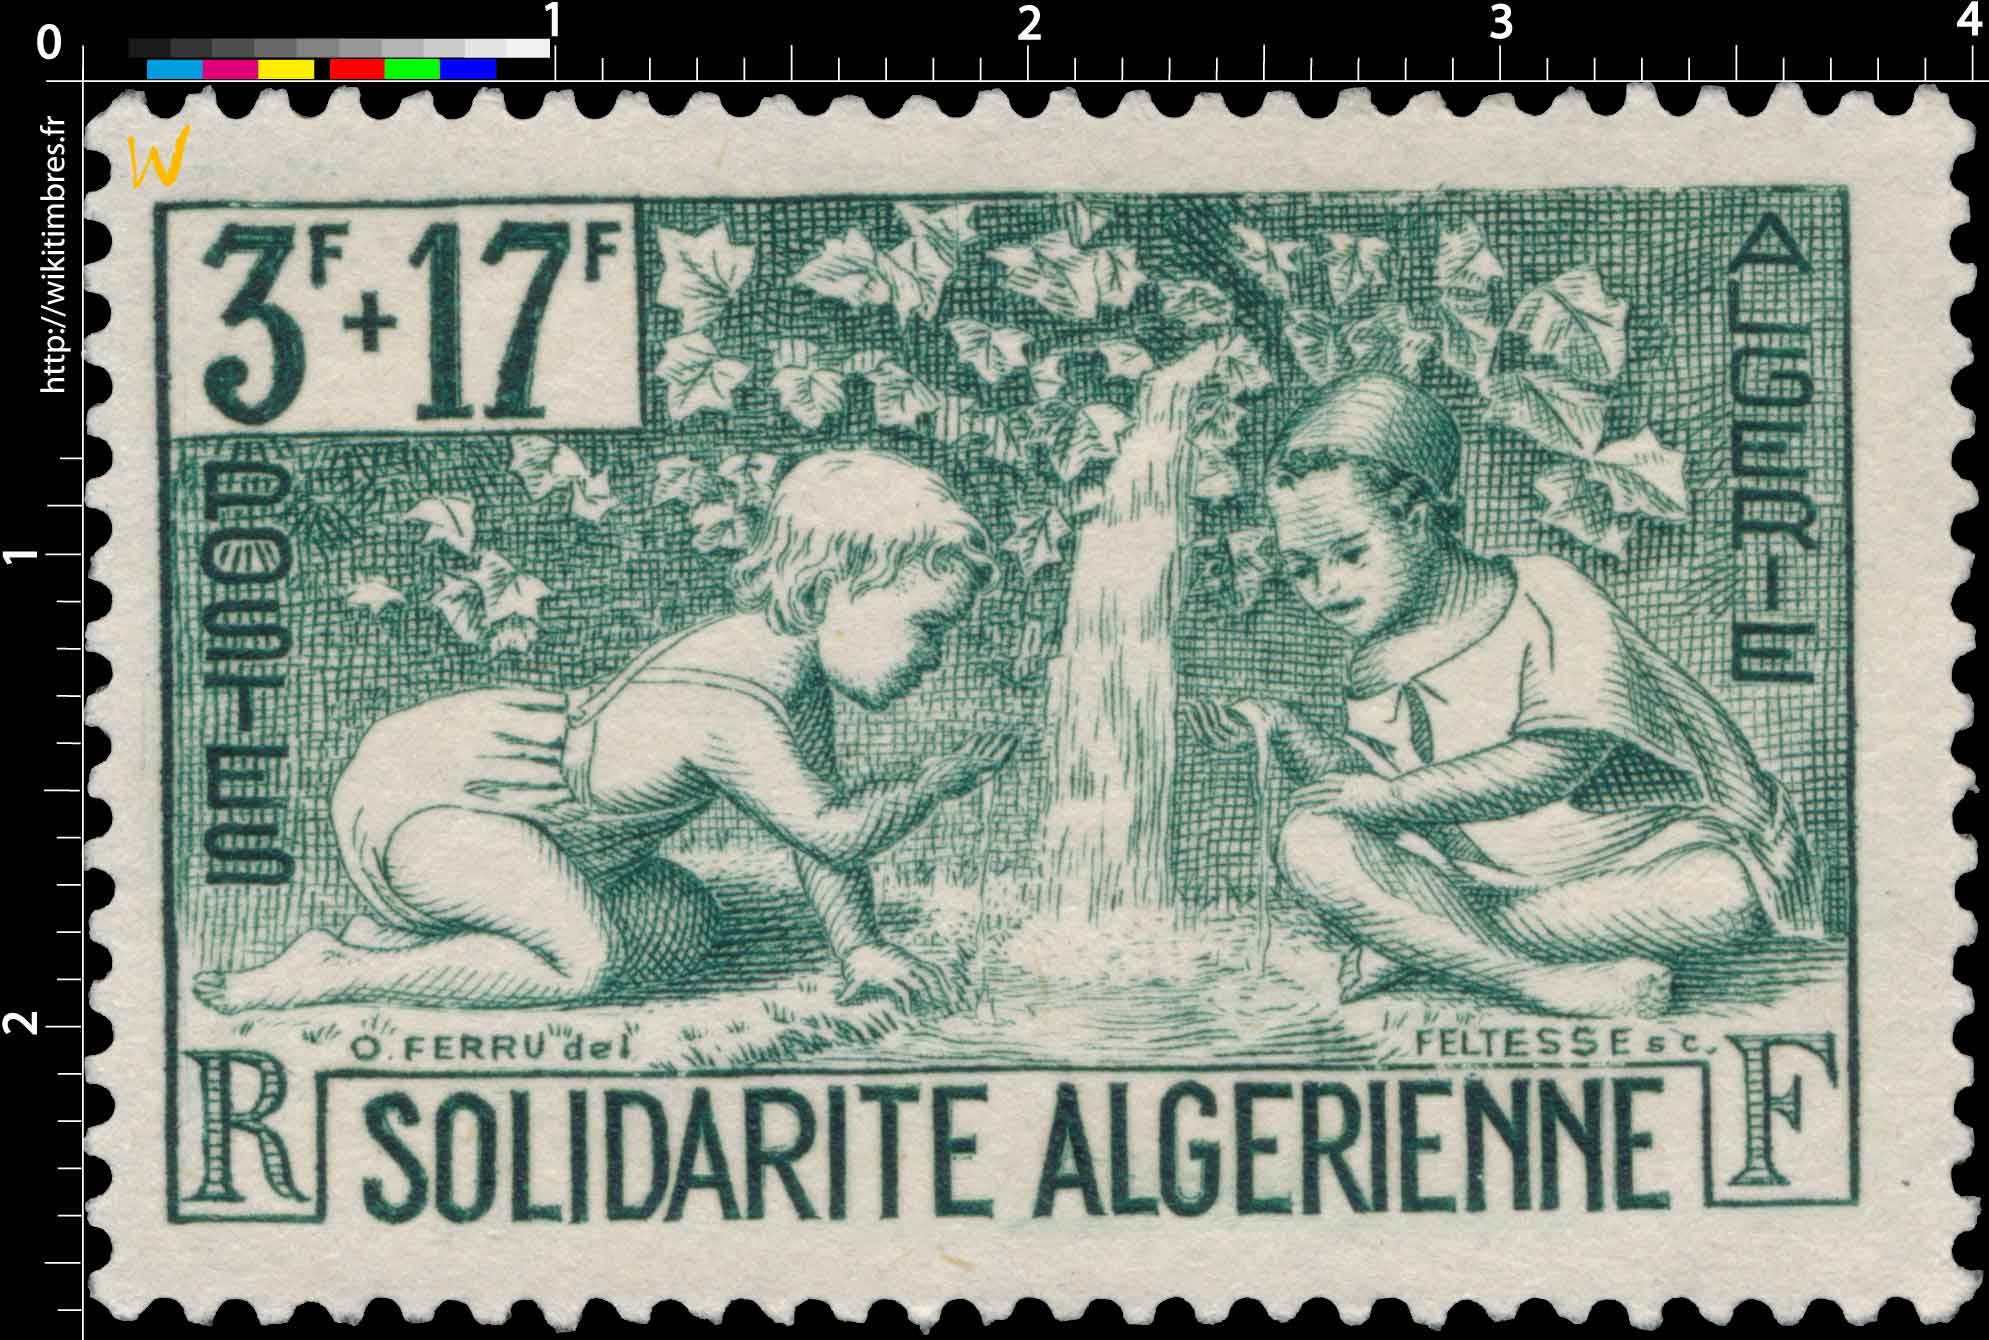 Algérie - Solidarité Algérienne